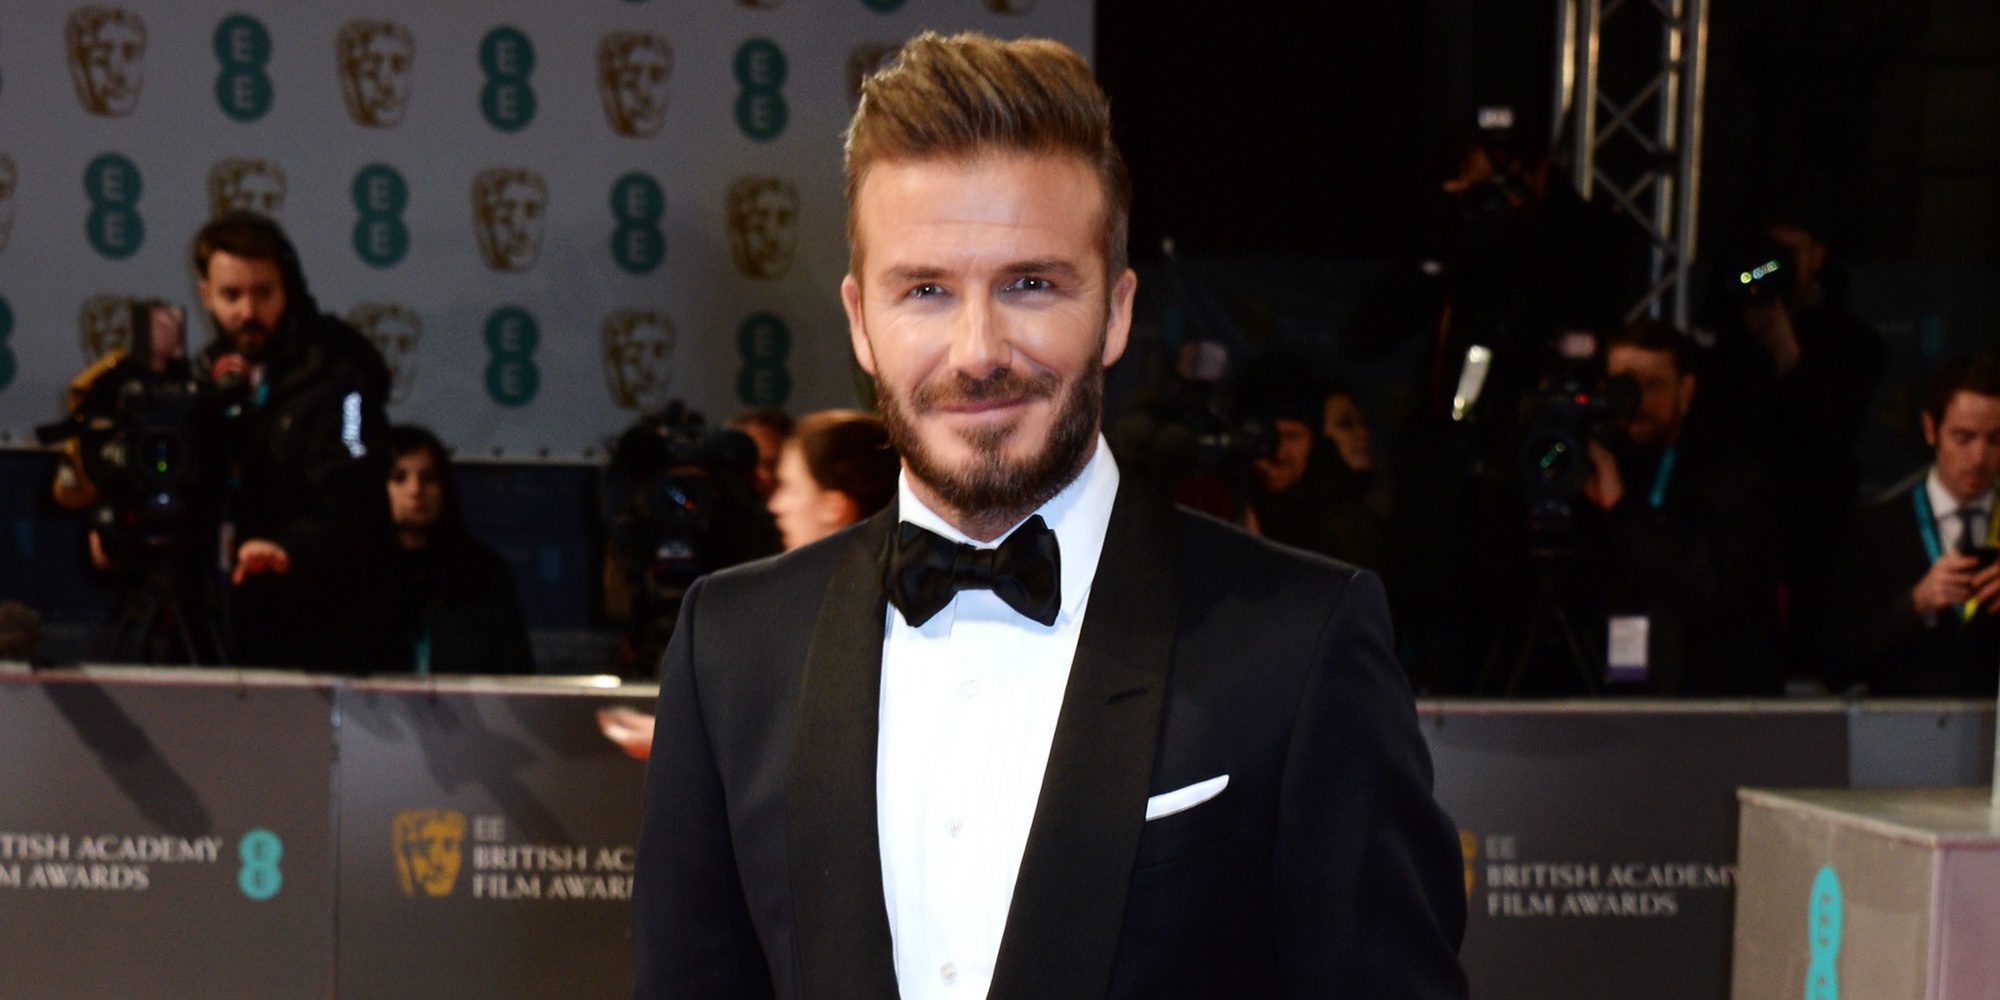 Un joven británico se gasta su subsidio de desempleo para parecerse a David Beckham